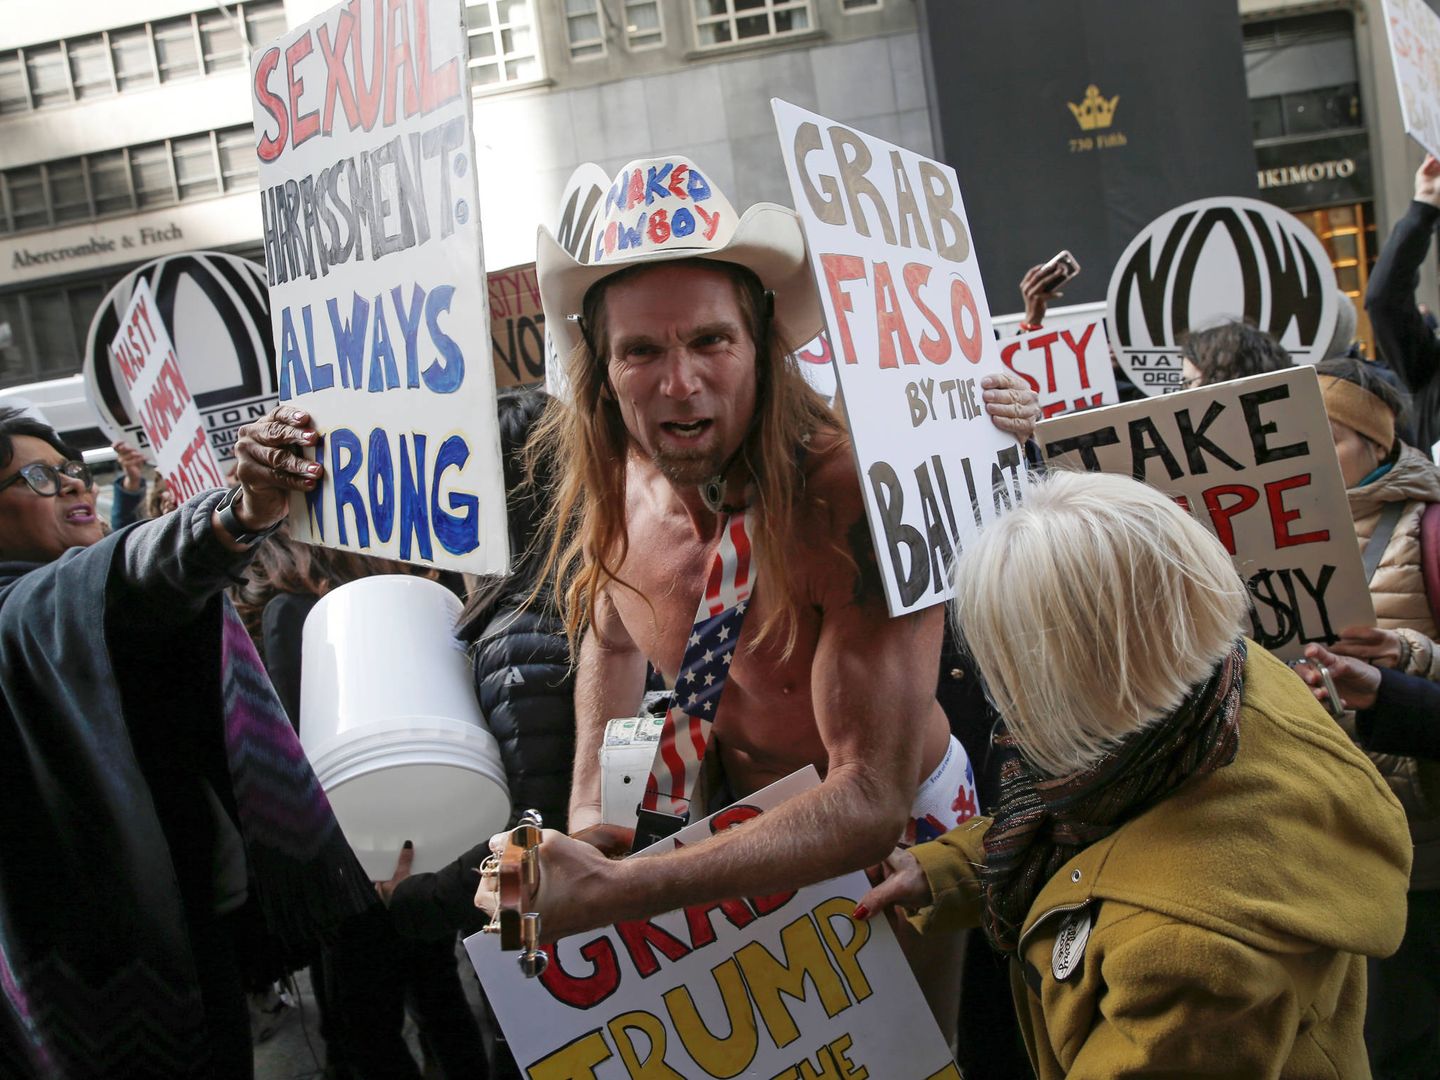 Un grupo de opositores al presidente Trump rodea a Robert Burck, simpatizantes del presidente, durante una protesta en Nueva York. (Reuters)